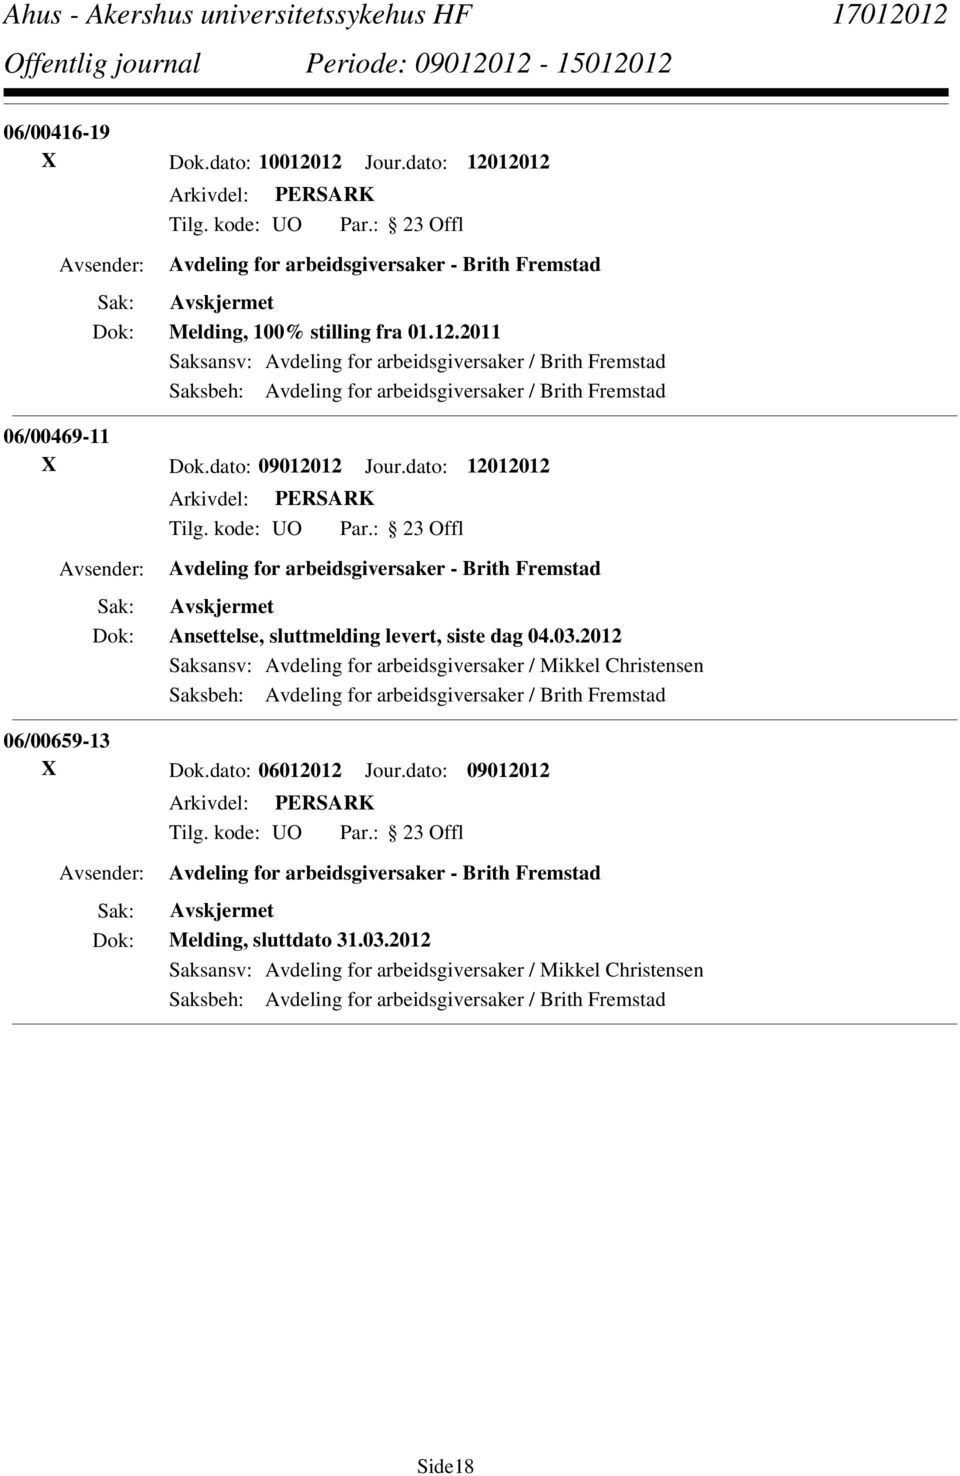 2012 Saksansv: Avdeling for arbeidsgiversaker / Mikkel Christensen Saksbeh: Avdeling for arbeidsgiversaker / Brith Fremstad 06/00659-13 X Dok.dato: 06012012 Jour.